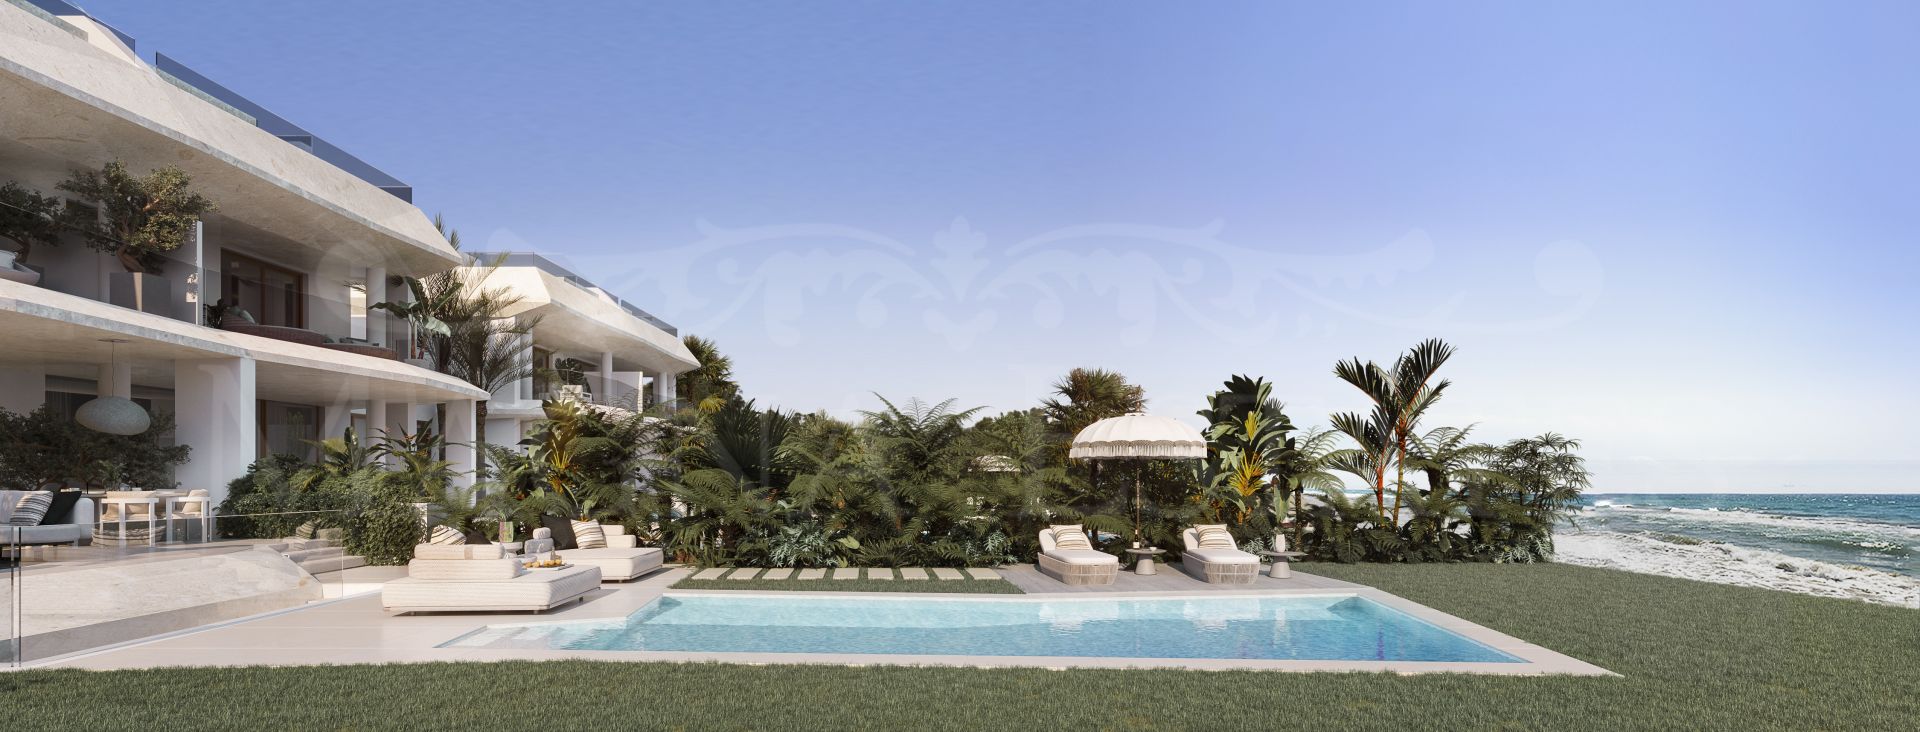 Brand new frontline beach villa in Marbella